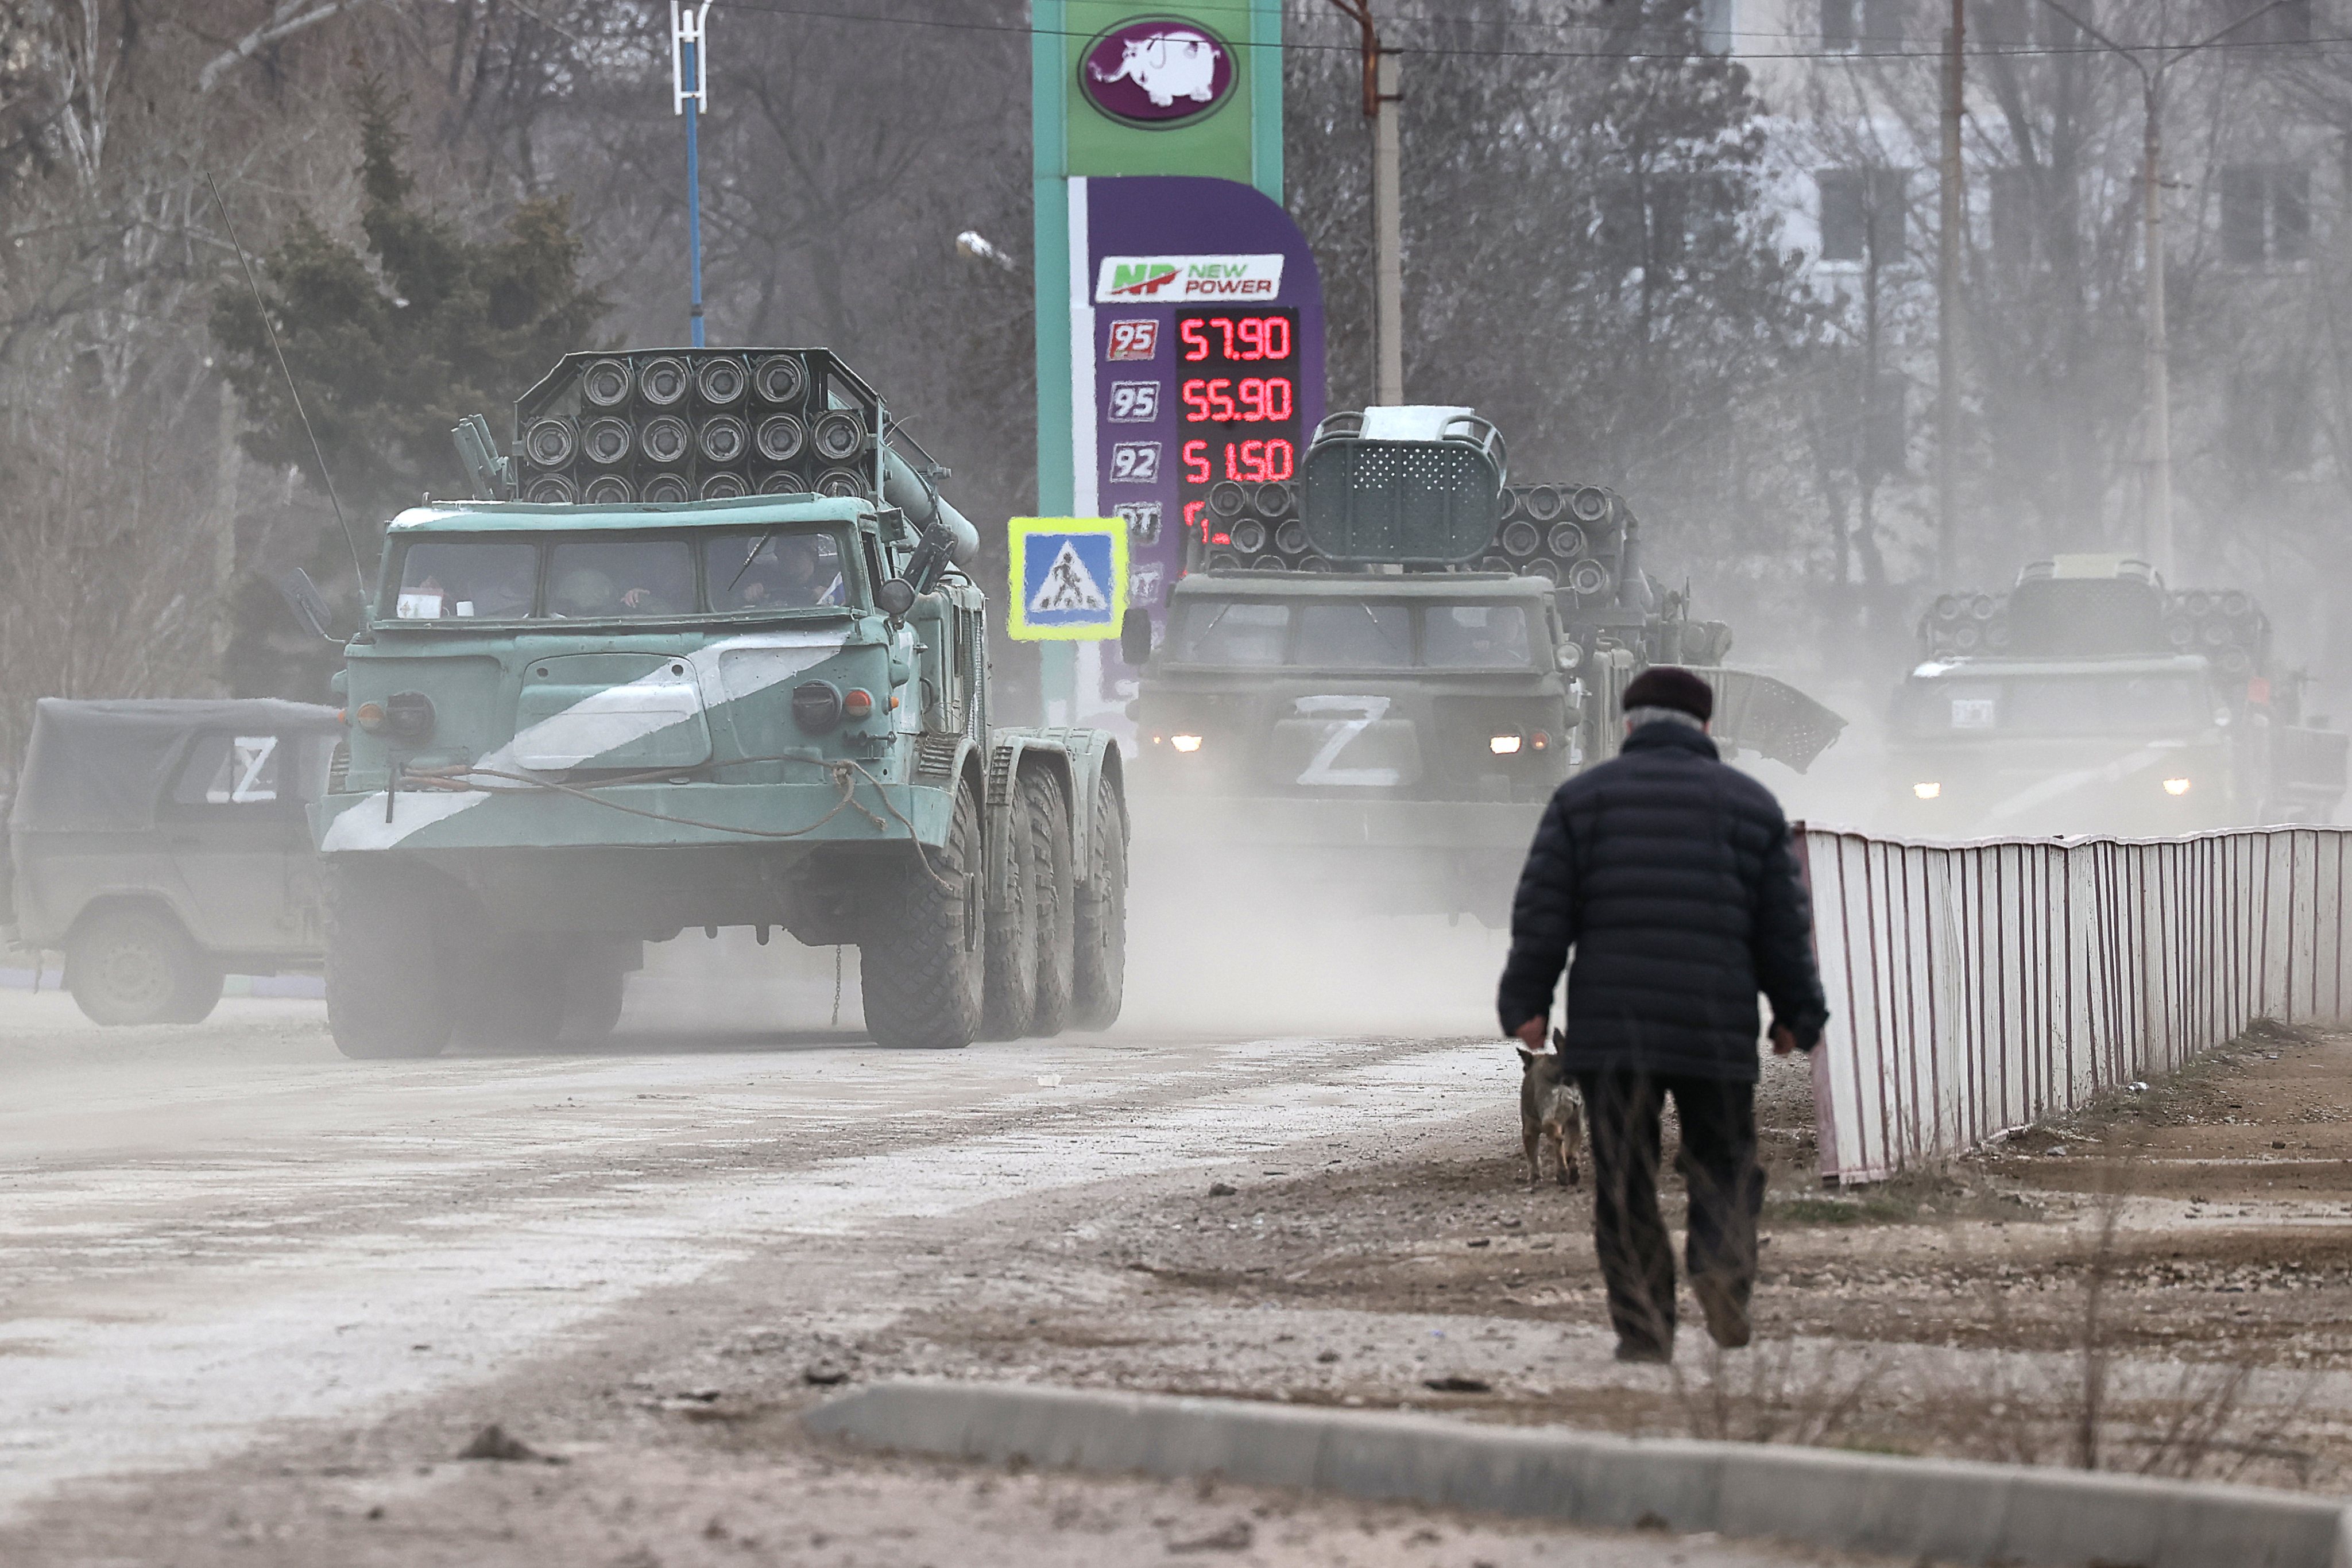 Military hardware moved across Crimea, Russia